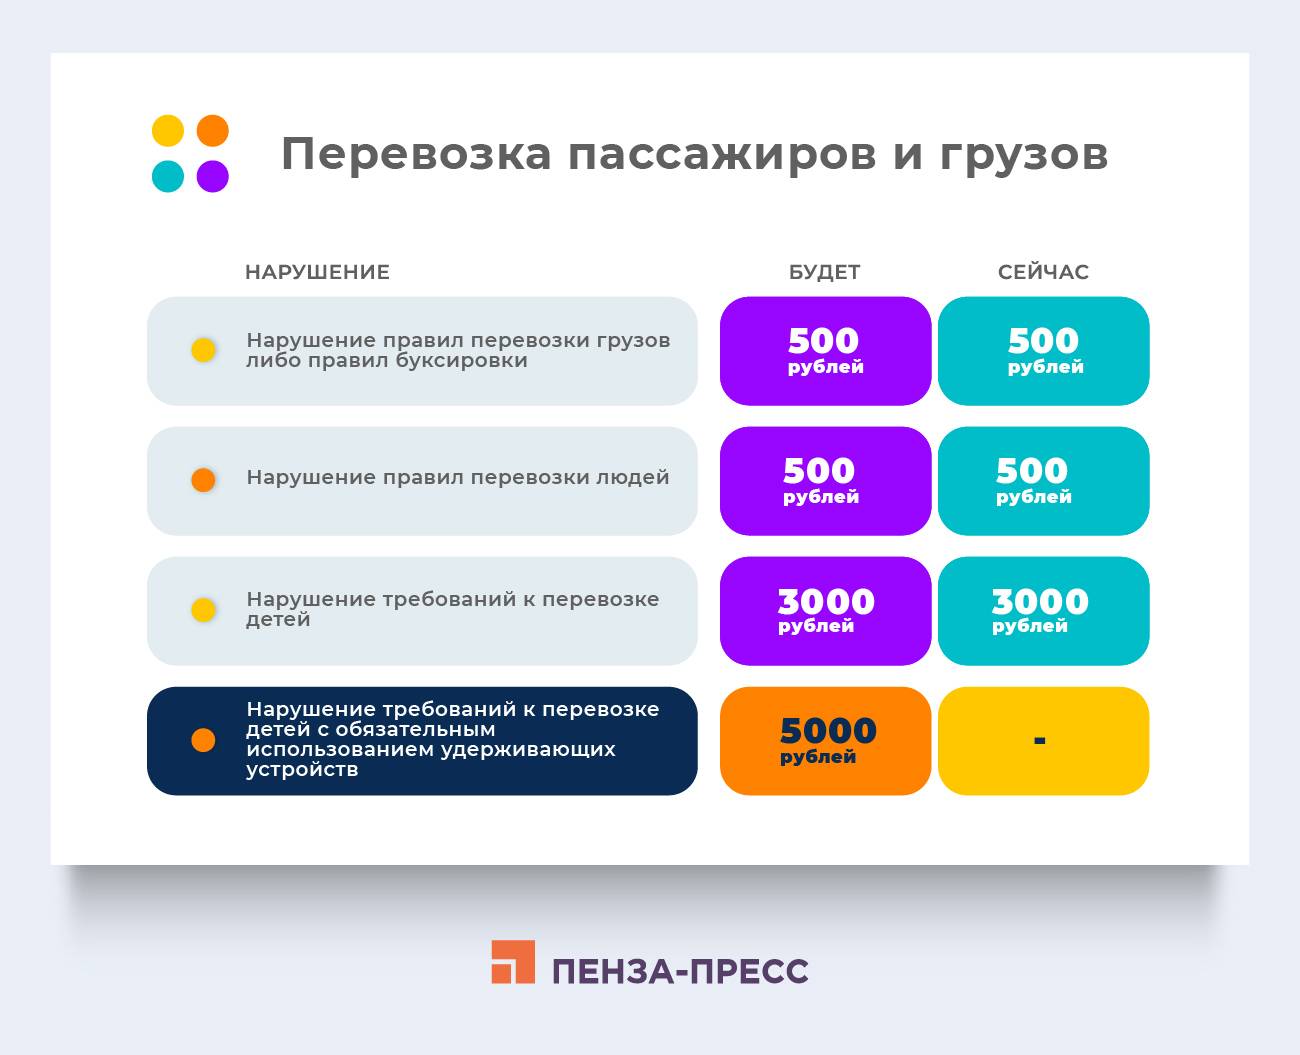 Русские школы в турции: преимущества, особенности и стоимость обучения | стиль жизни  на weproject